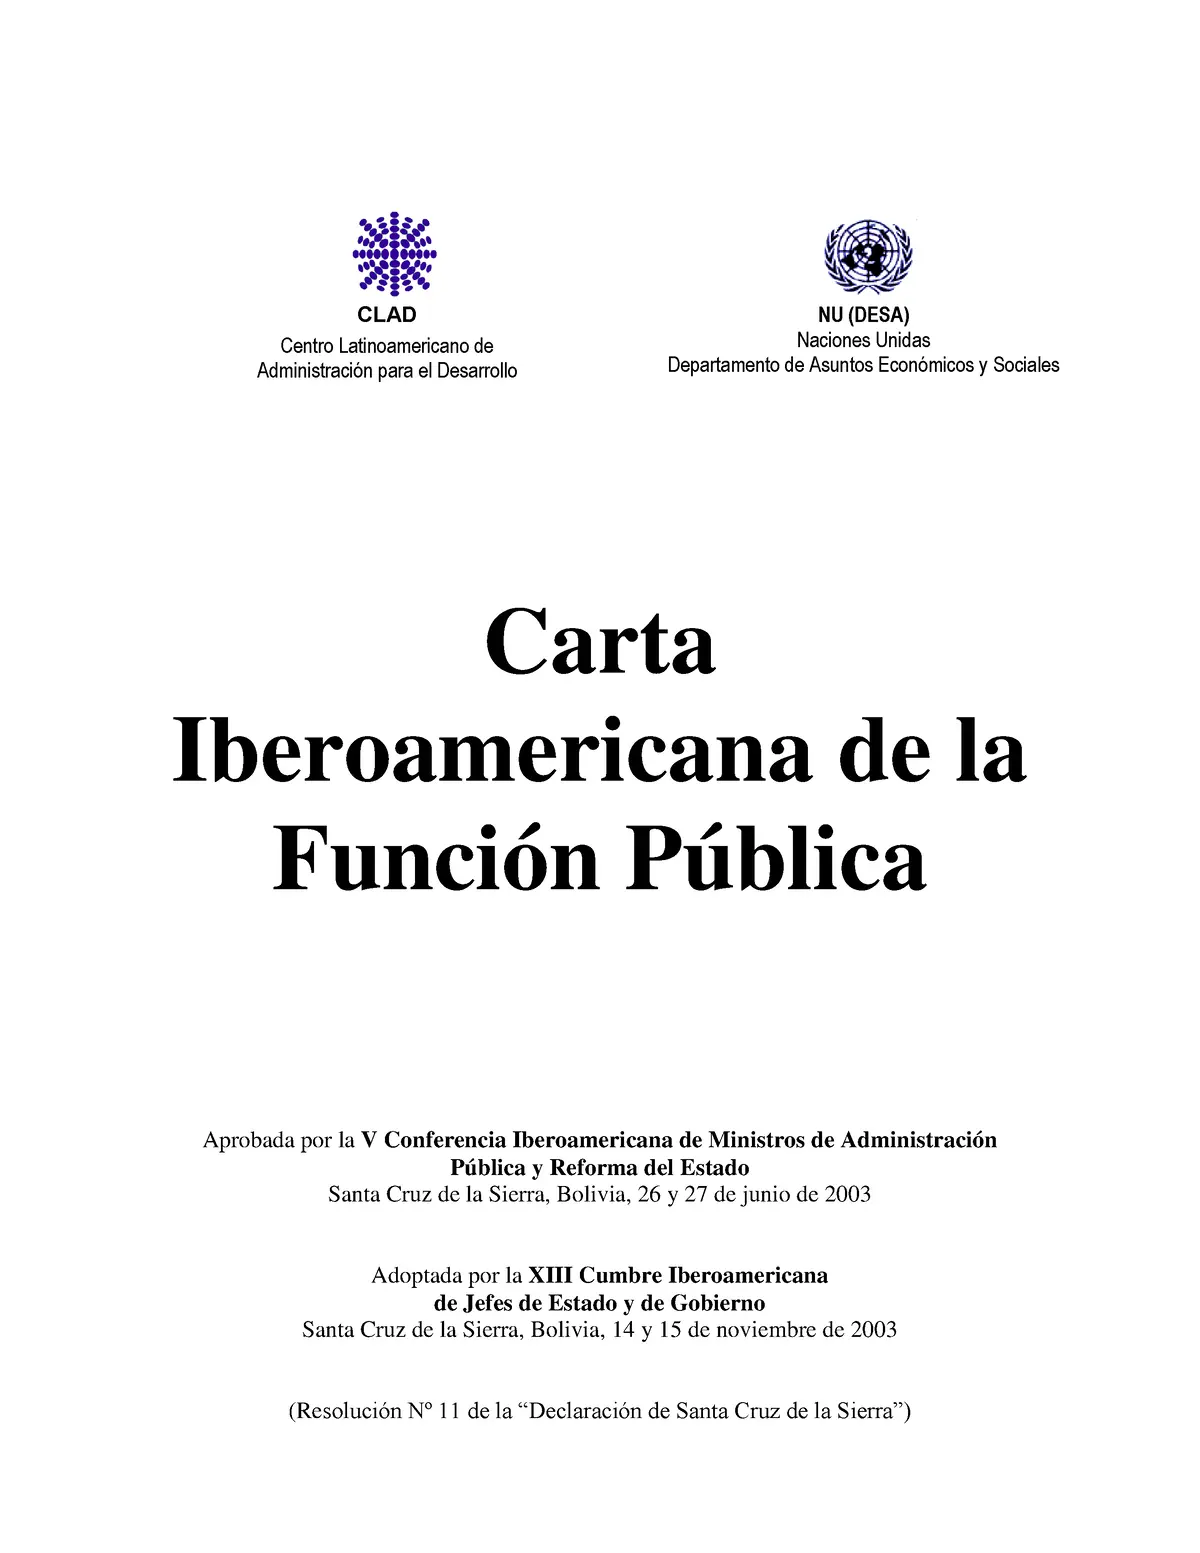 carta iberoamericana de la función pública resumen - Qué debe incorporar un sistema de Función Pública para su desarrollo